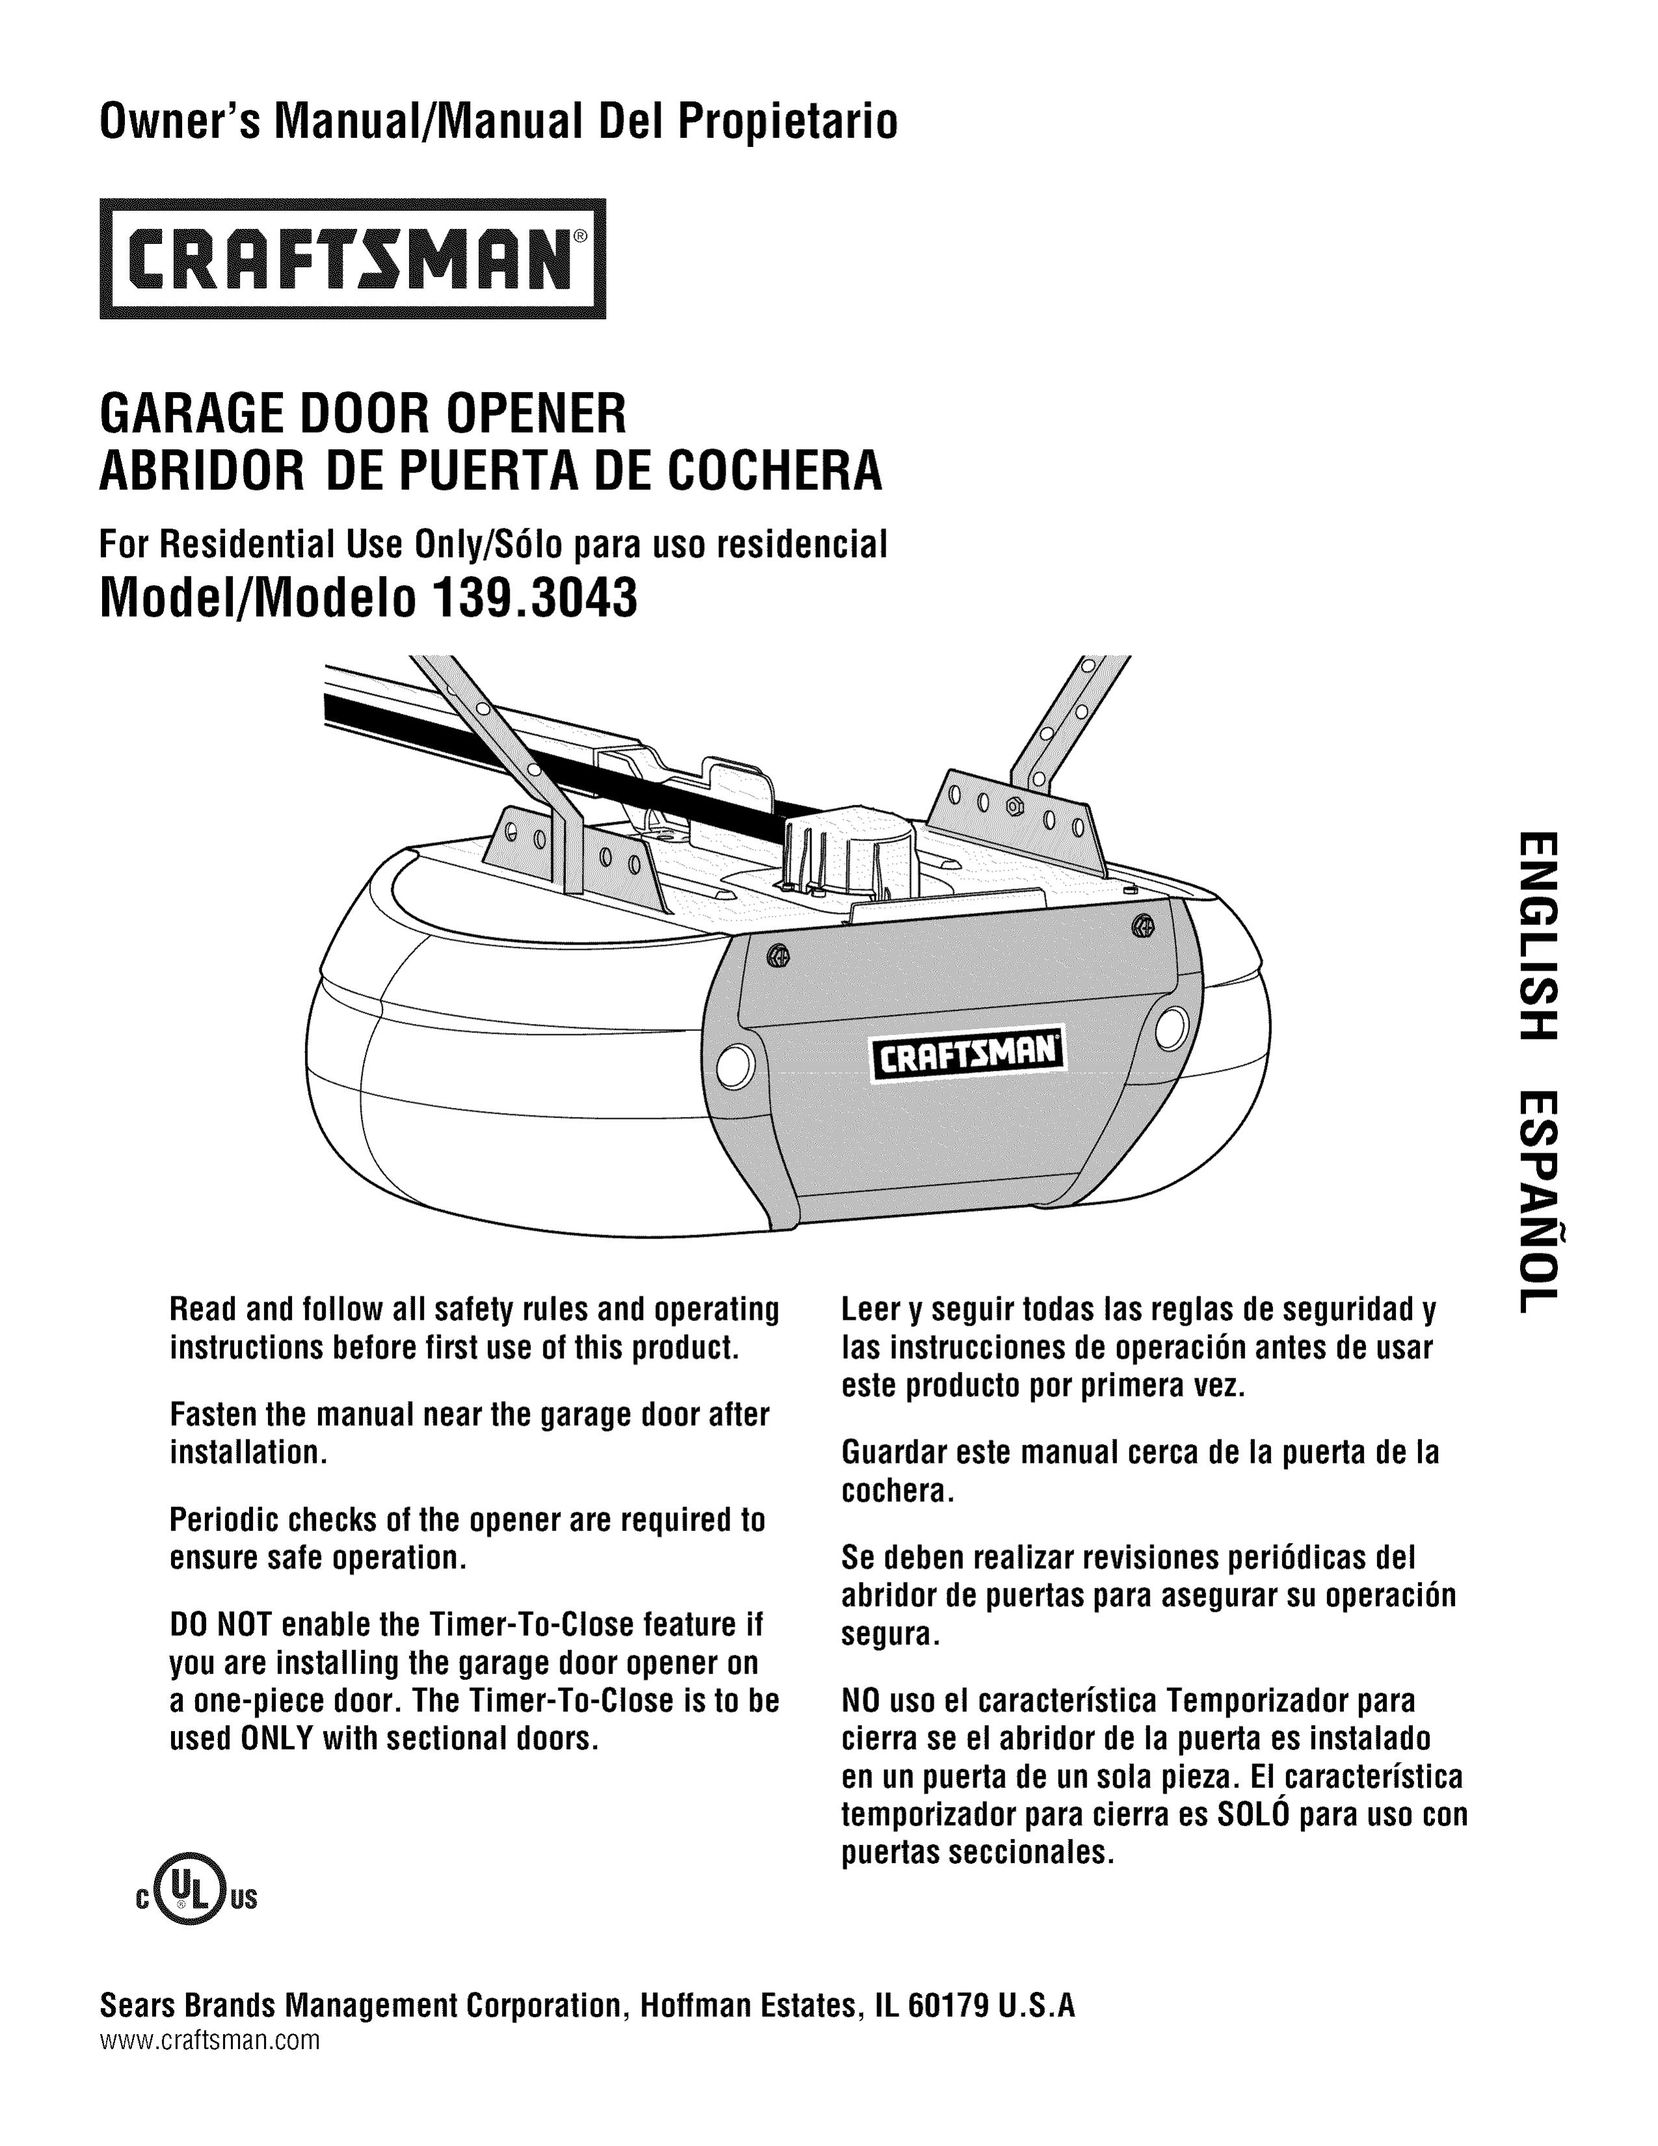 Craftsman 139.3043 Garage Door Opener User Manual